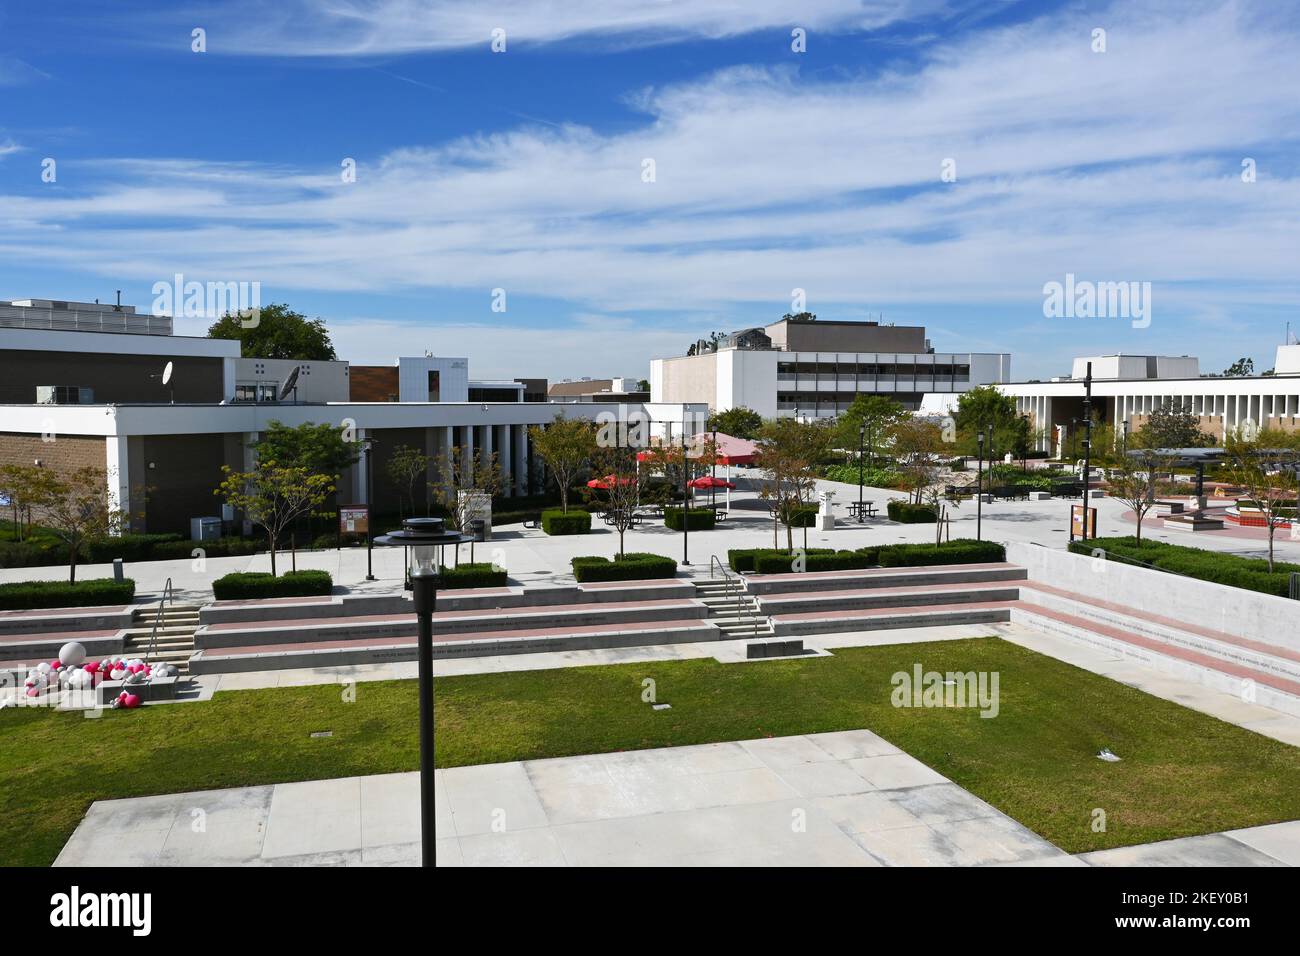 SANTA ANA, CALIFORNIE - 11 NOVEMBRE 2022 : vue d'ensemble du campus du Santa Ana College depuis Dunlap Hall avec l'amphithéâtre en premier plan. Banque D'Images